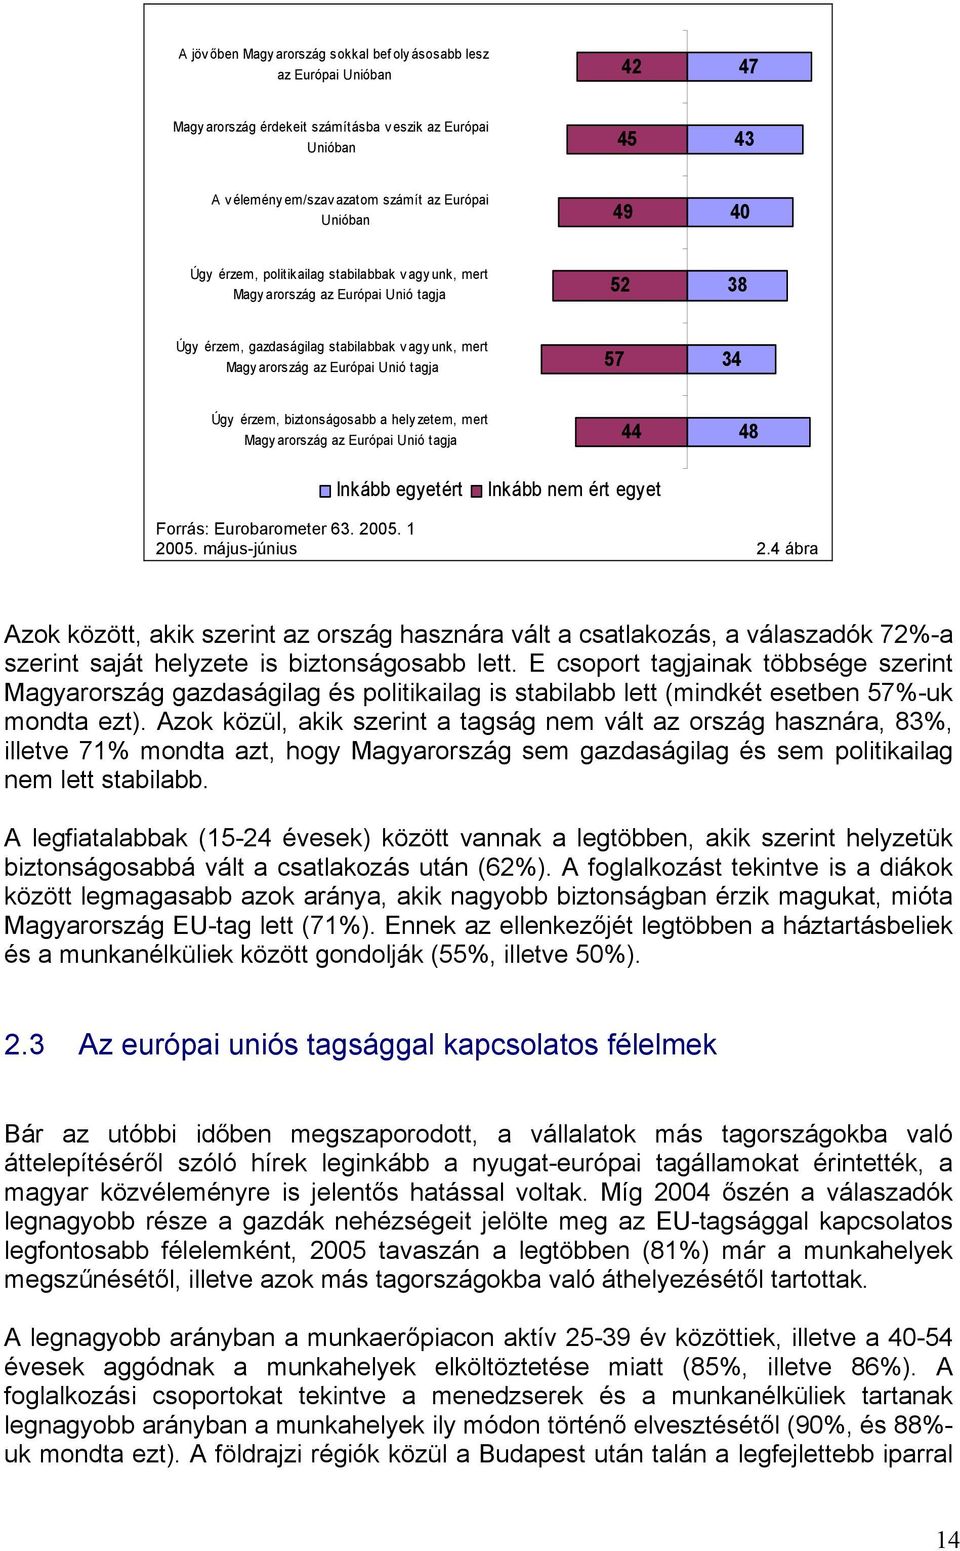 érzem, biztonságosabb a hely zetem, mert Magy arország az Európai Unió tagja 44 48 Inkább egyetért Inkább nem ért egyet Forrás: Eurobarometer 63. 2005. 1 2005. május-június 2.